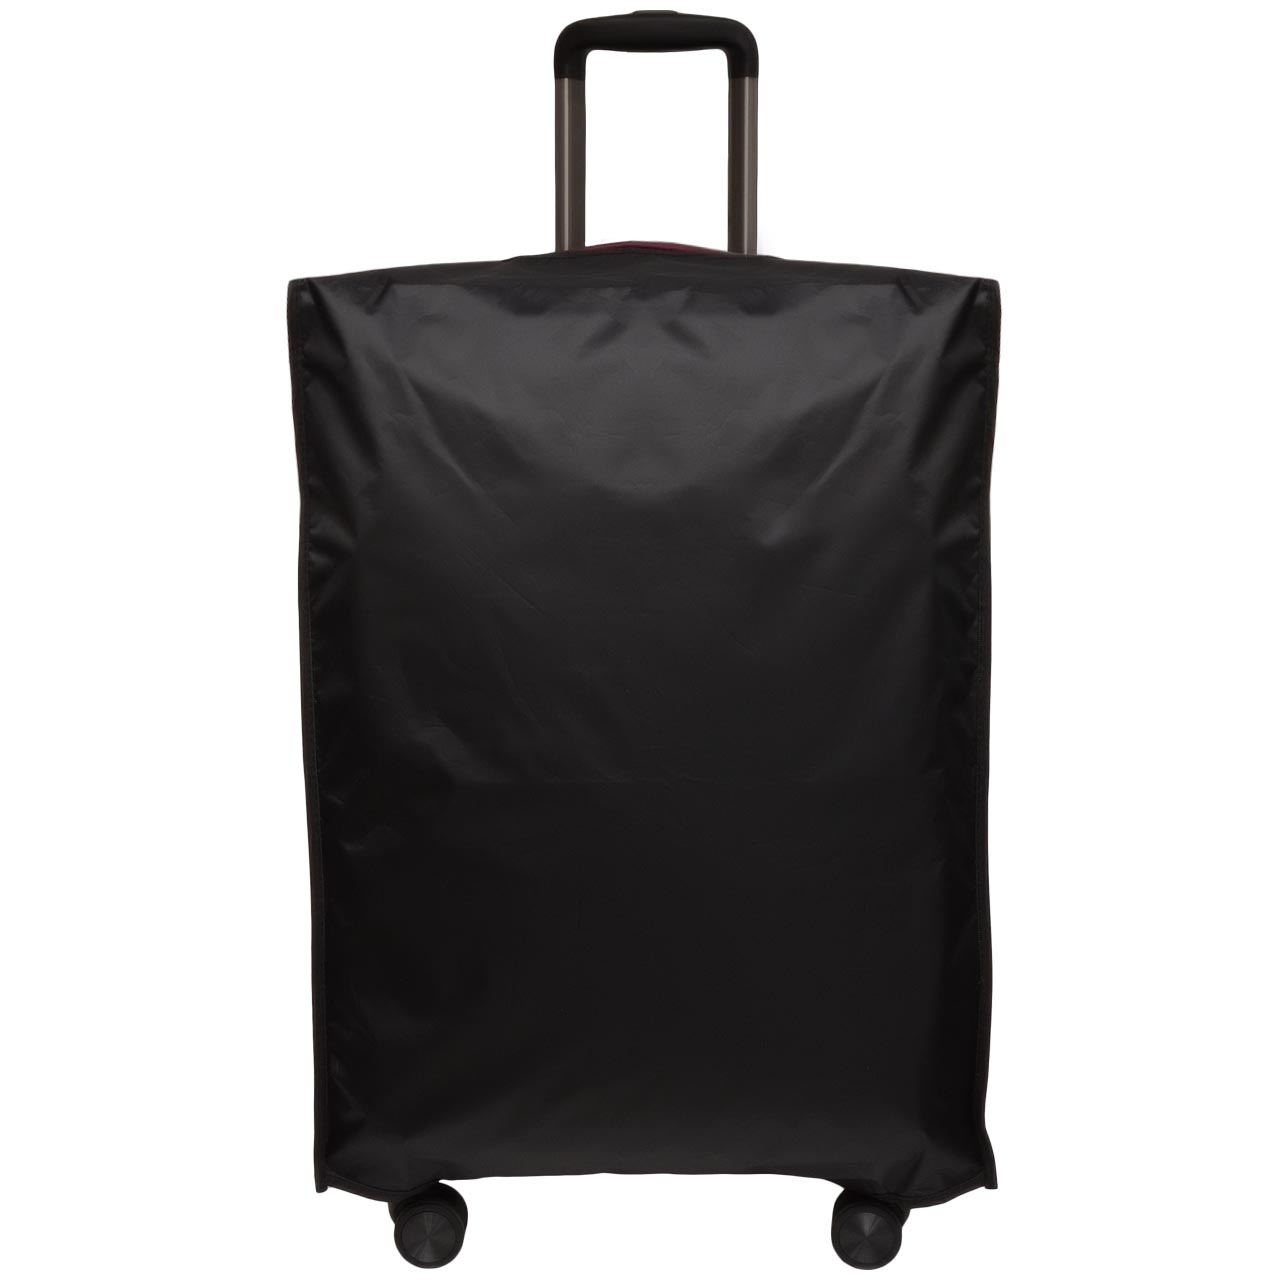 کاور چمدان مدل AK کد 2 - 2300003 سایز متوسط| خرید لوازم سفر